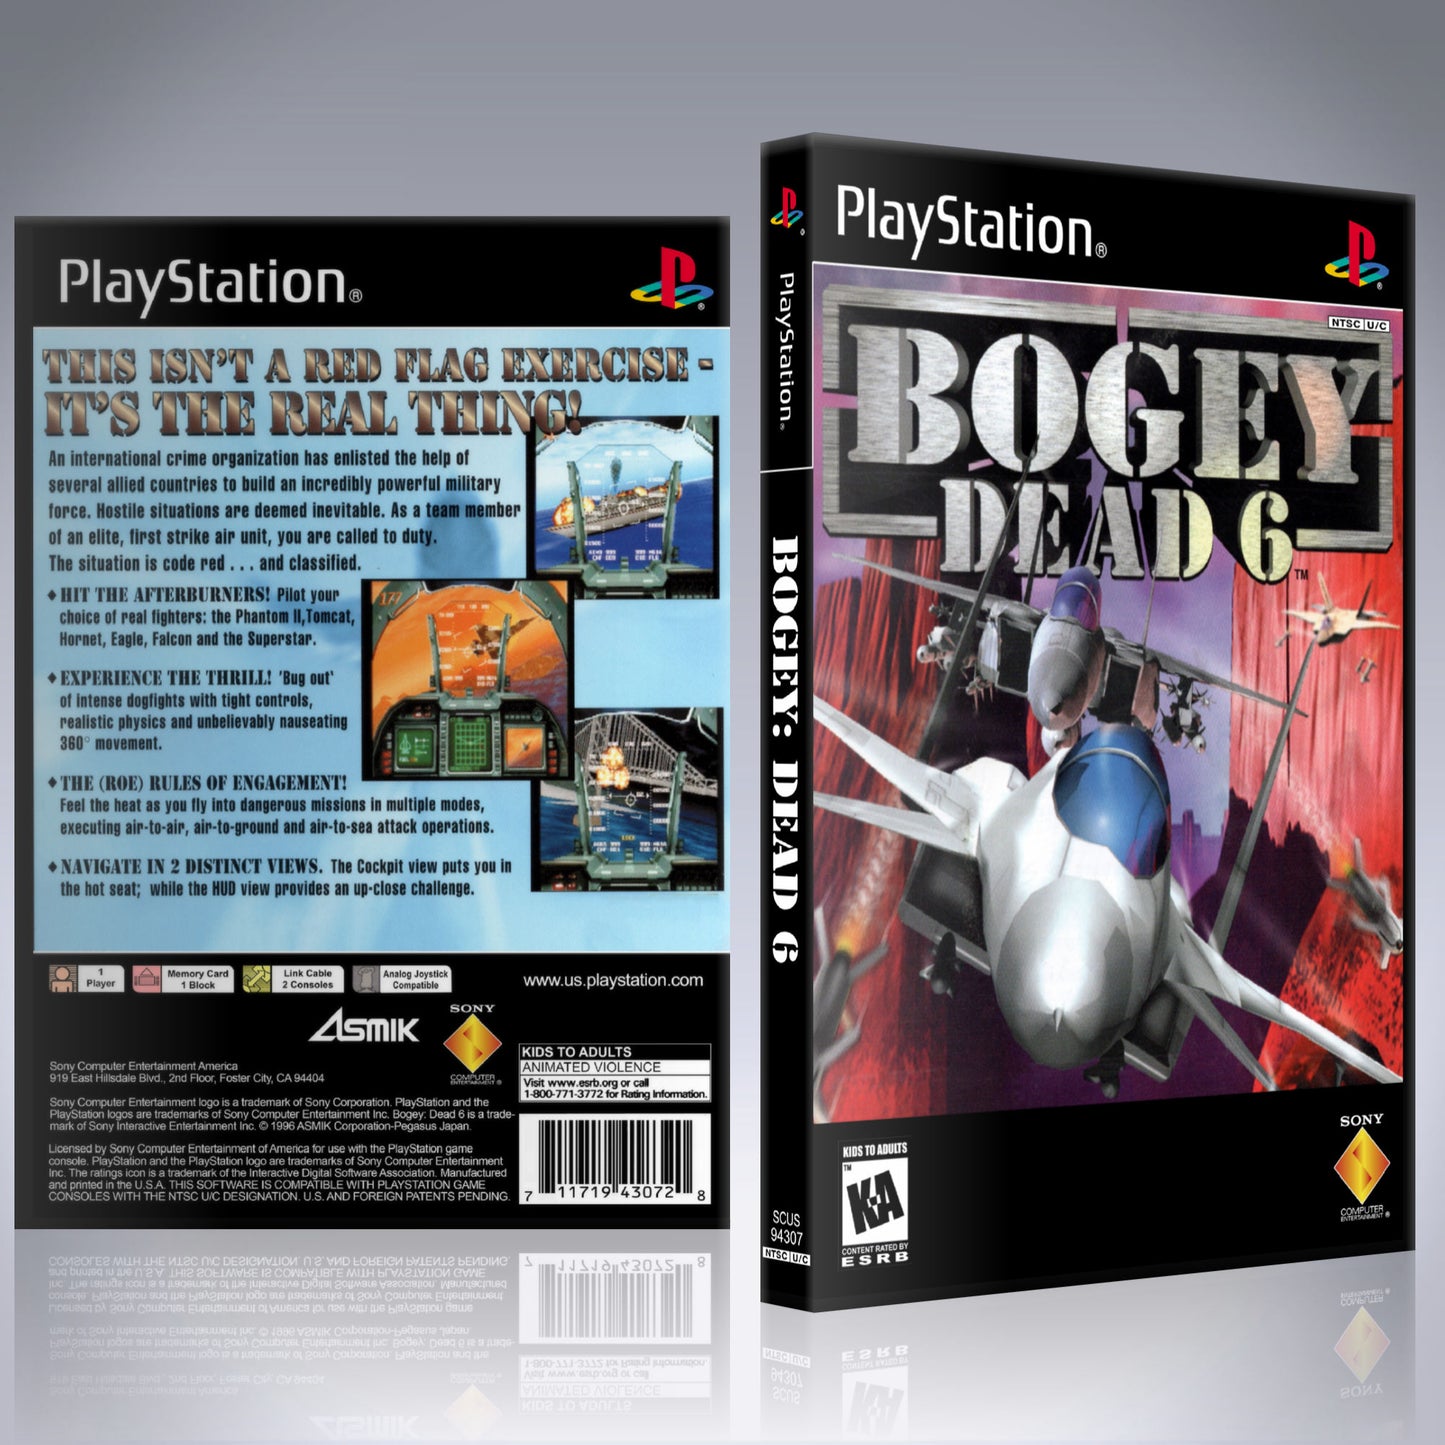 PS1 Case - NO GAME - Bogey -  Dead 6